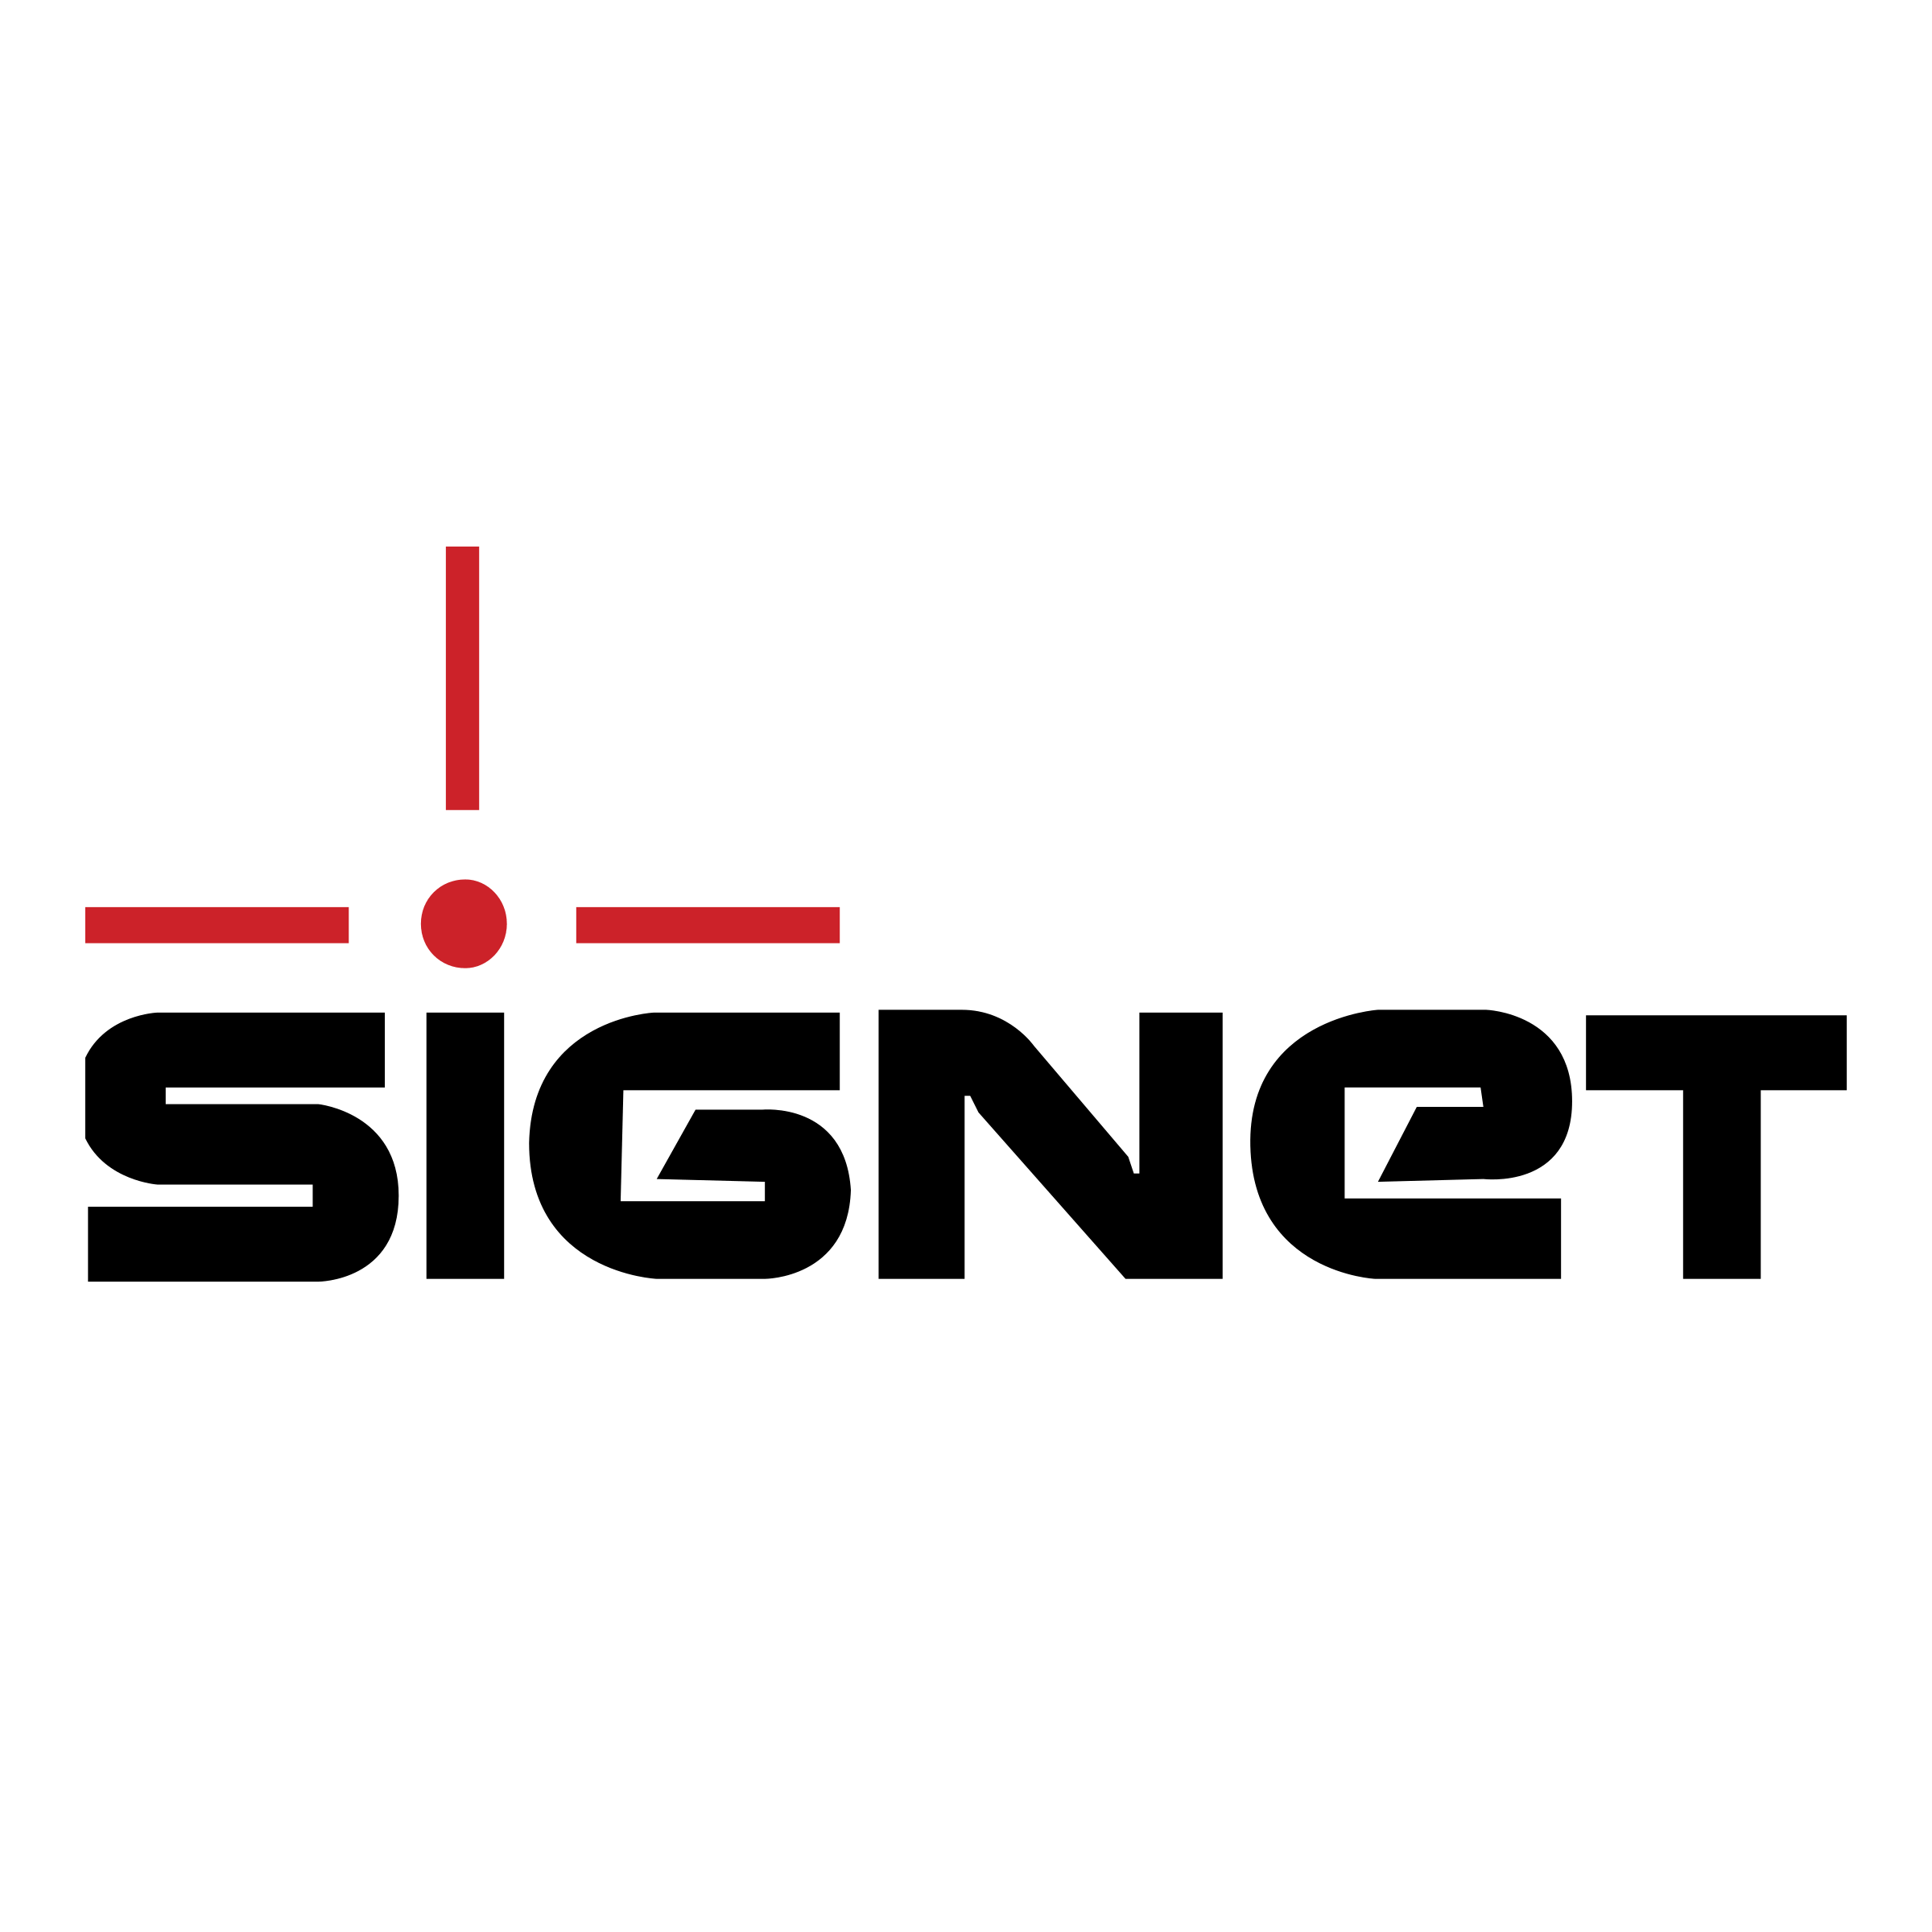 Signet Logo - Signet Logo PNG Transparent & SVG Vector - Freebie Supply